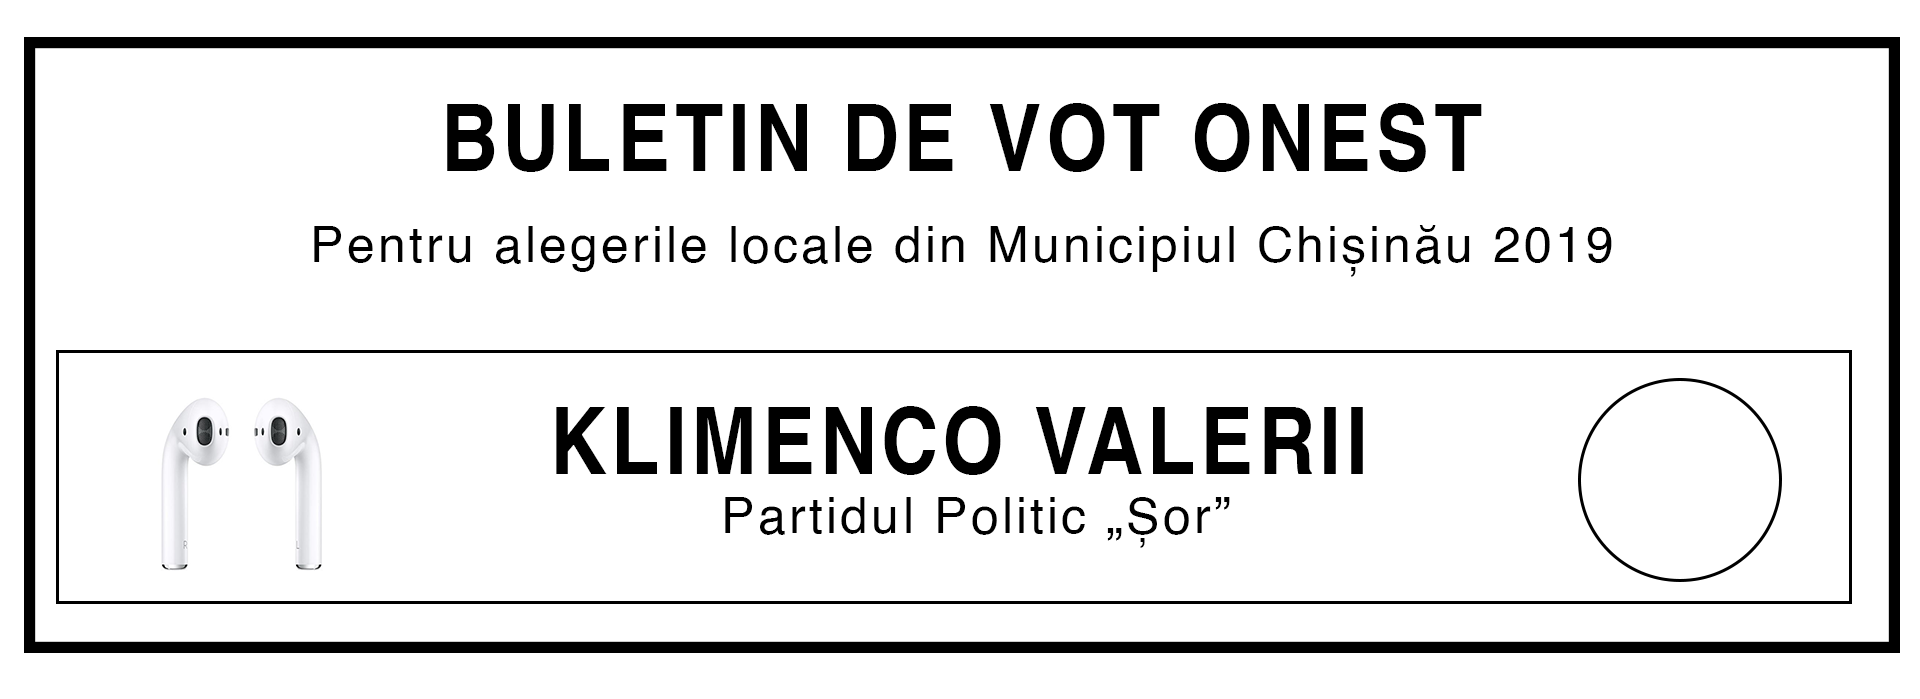 Buletin de vot, haios, glumă, electorala 2019, campanie electorală, alegeri, primar, Chișinău